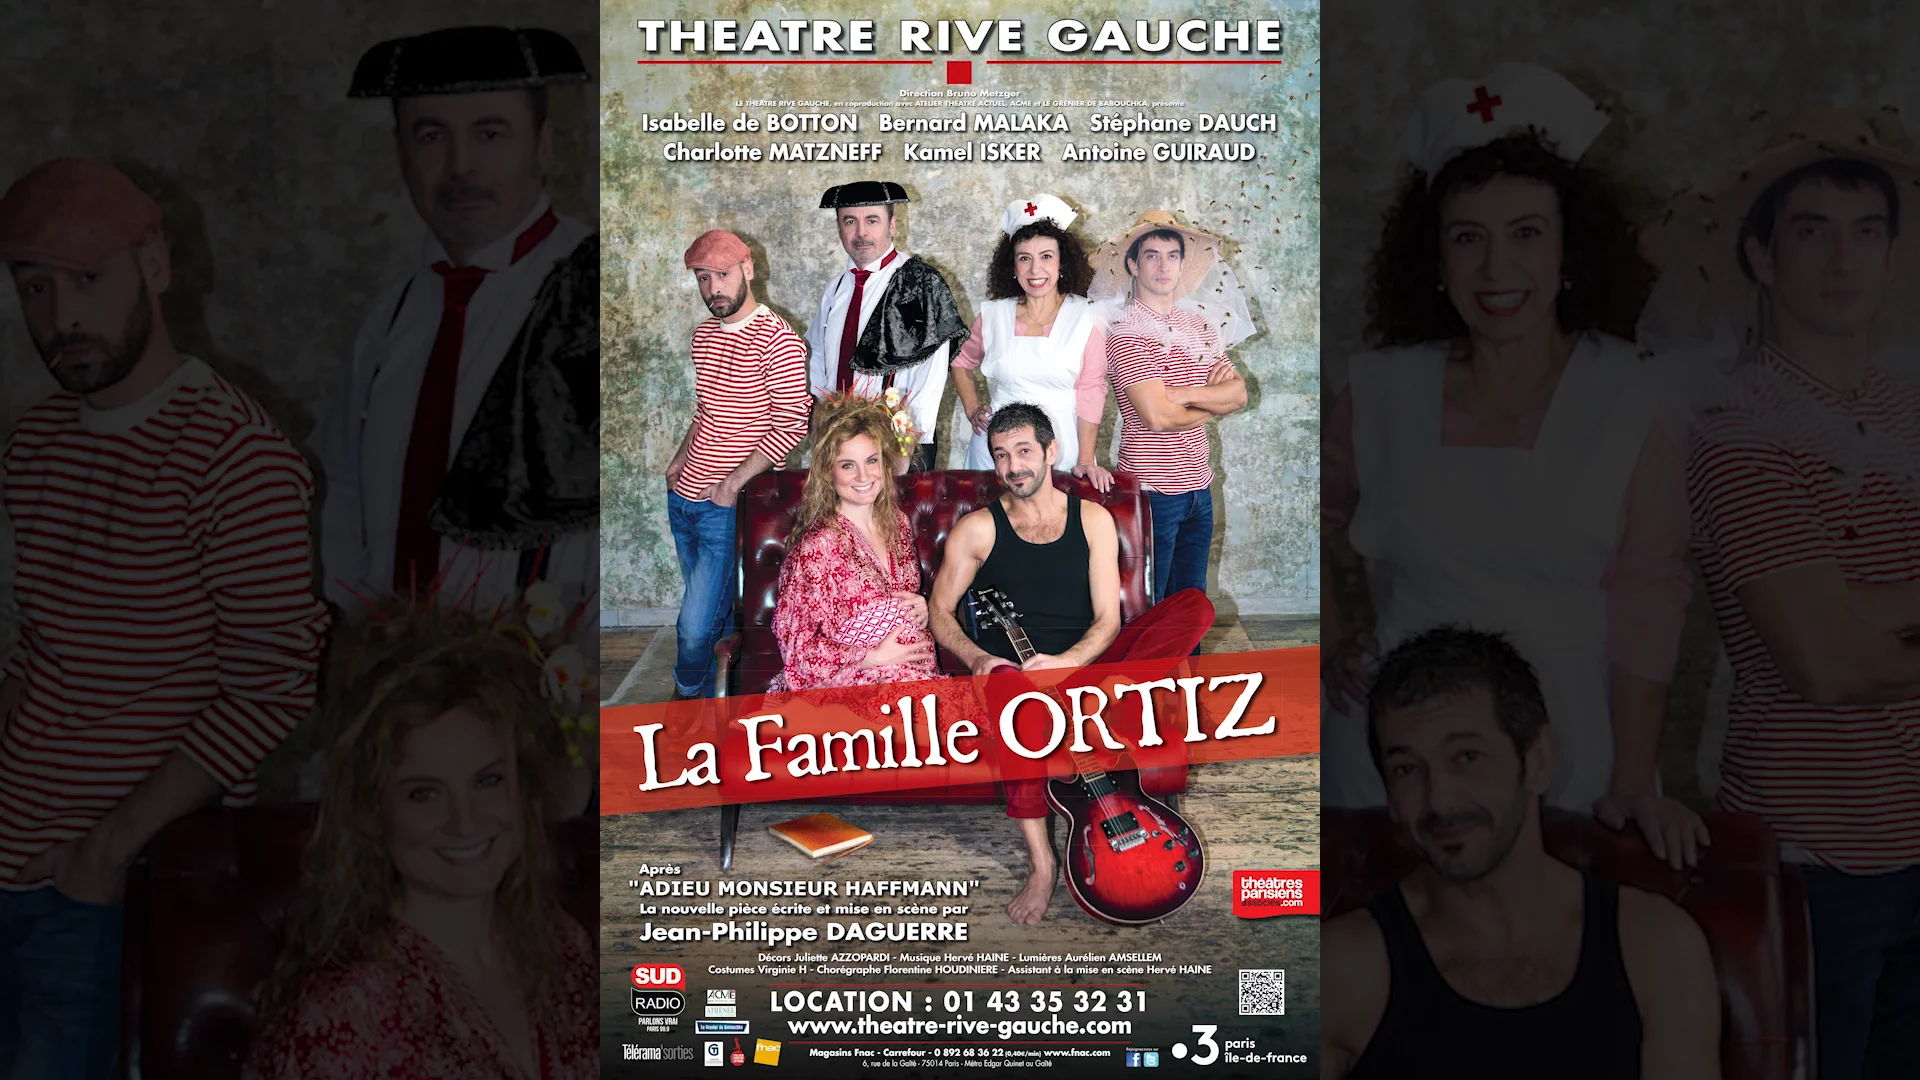 LA FAMILLE ORTIZ (Théâtre Rive Gauche-Paris 14ème) - Bande annonce on Vimeo